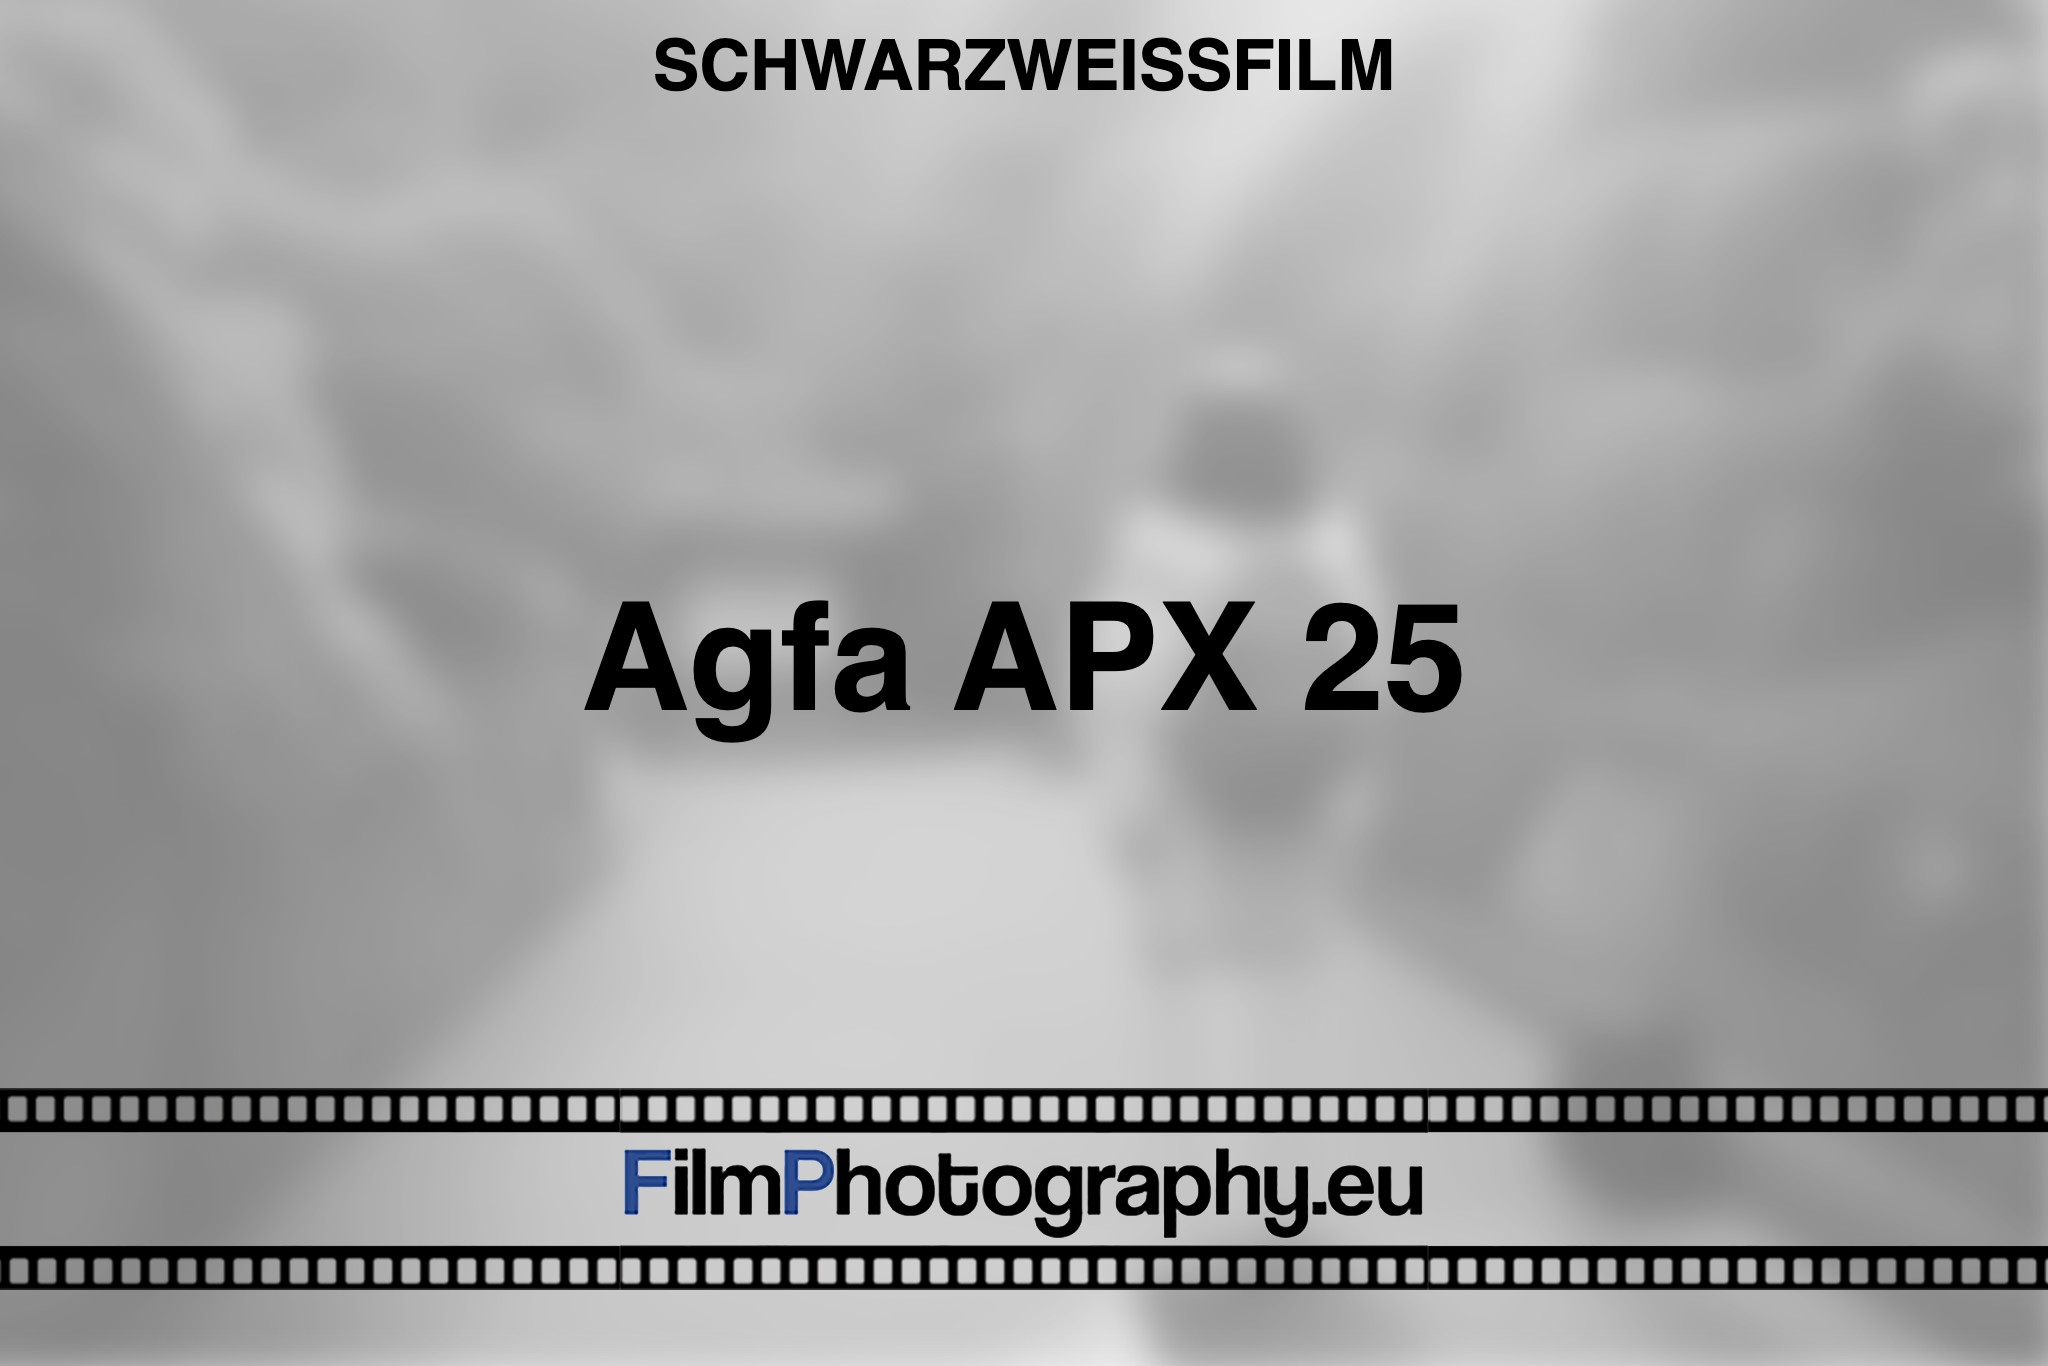 agfa-apx-25-schwarzweißfilm-bnv